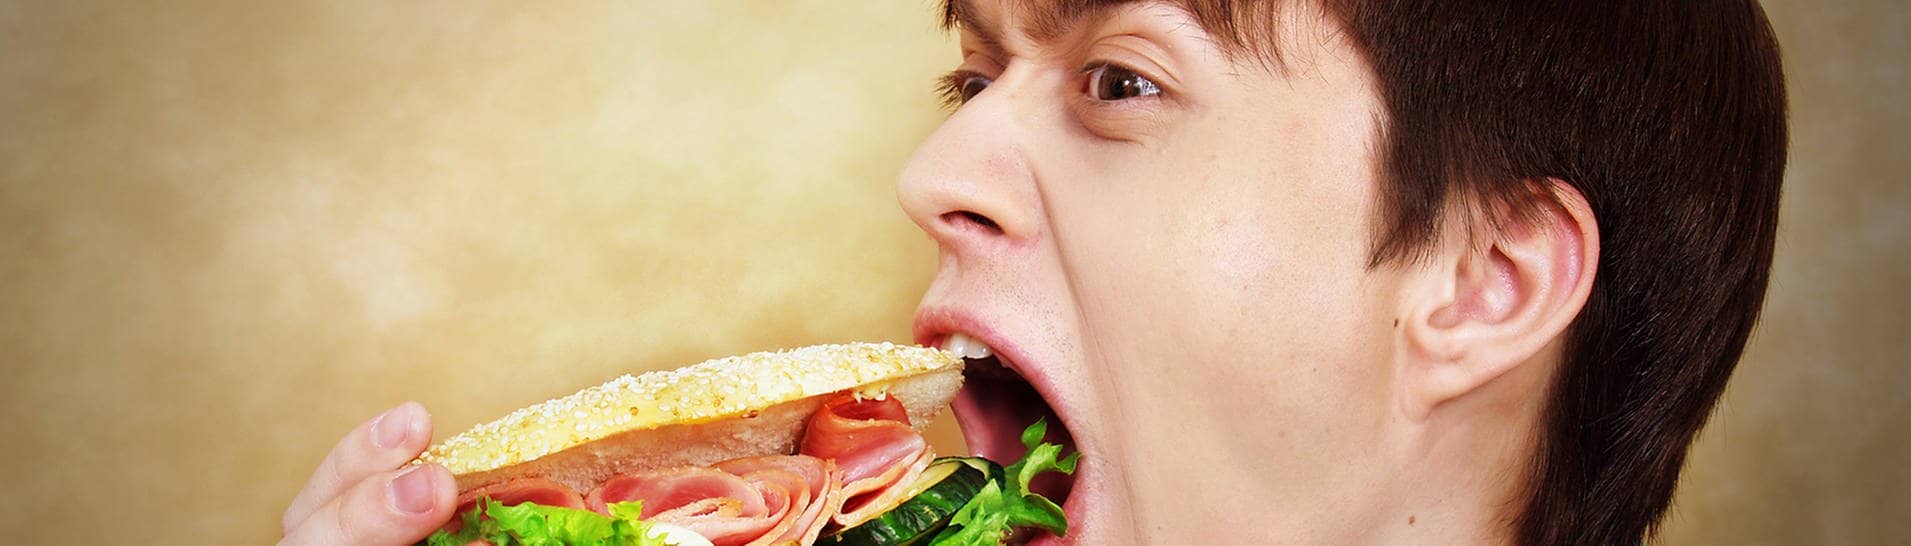 Mann der ein Sandwich isst (Foto: Adobe Stock / Natalia Uzkova)